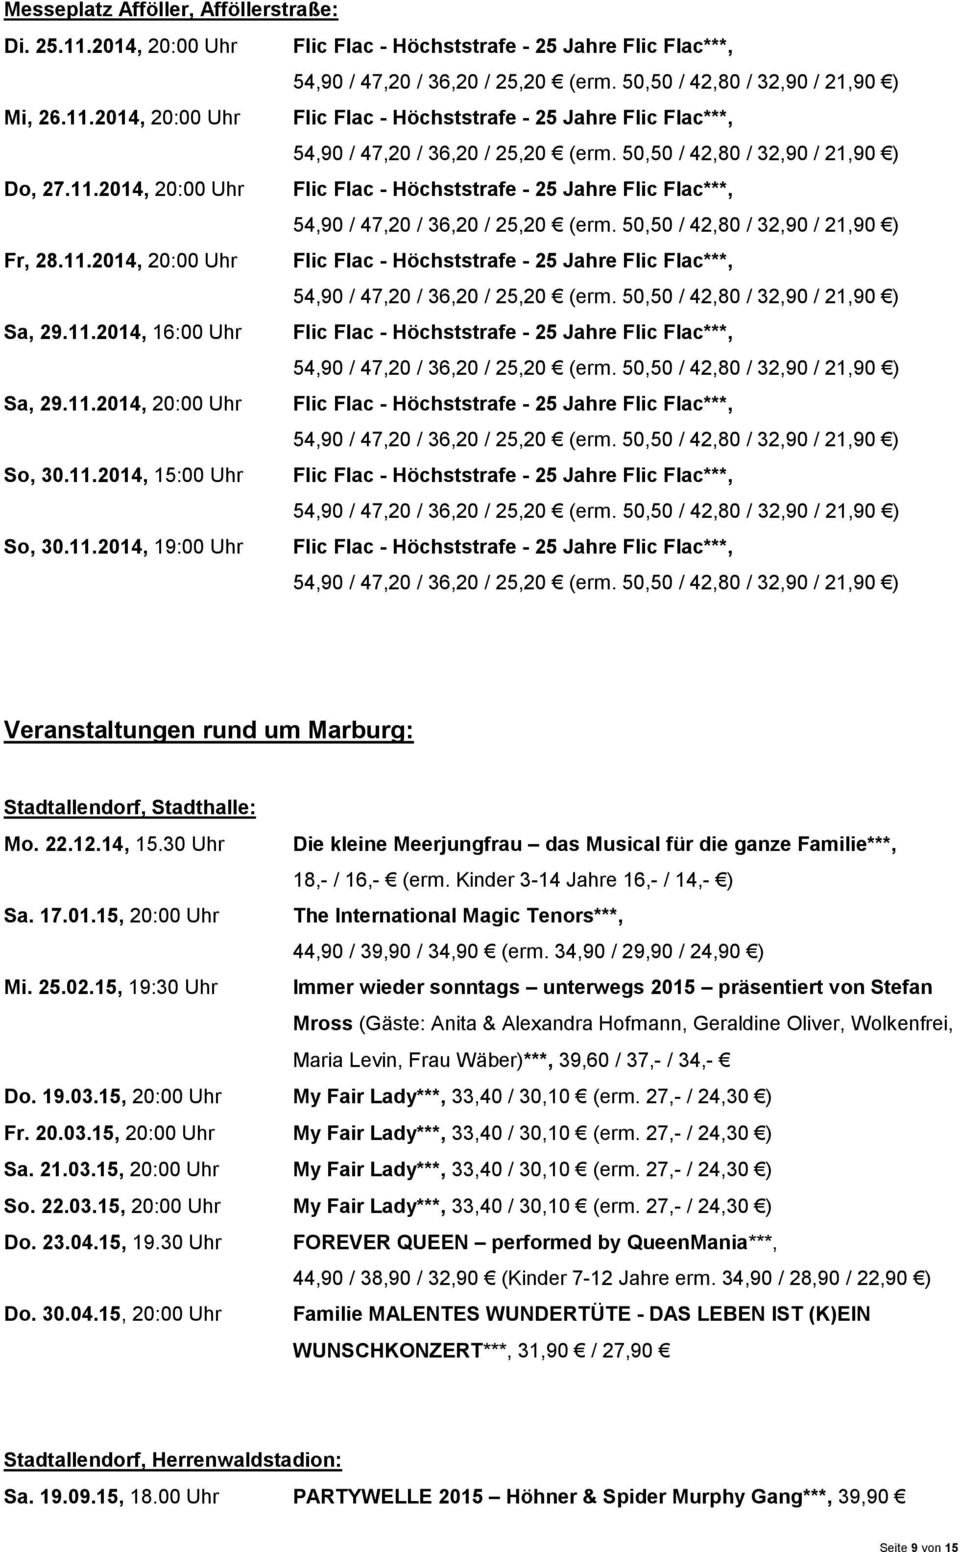 11.2014, 15:00 Uhr Flic Flac - Höchststrafe - 25 Jahre Flic Flac***, So, 30.11.2014, 19:00 Uhr Flic Flac - Höchststrafe - 25 Jahre Flic Flac***, Veranstaltungen rund um Marburg: Stadtallendorf, Stadthalle: Mo.